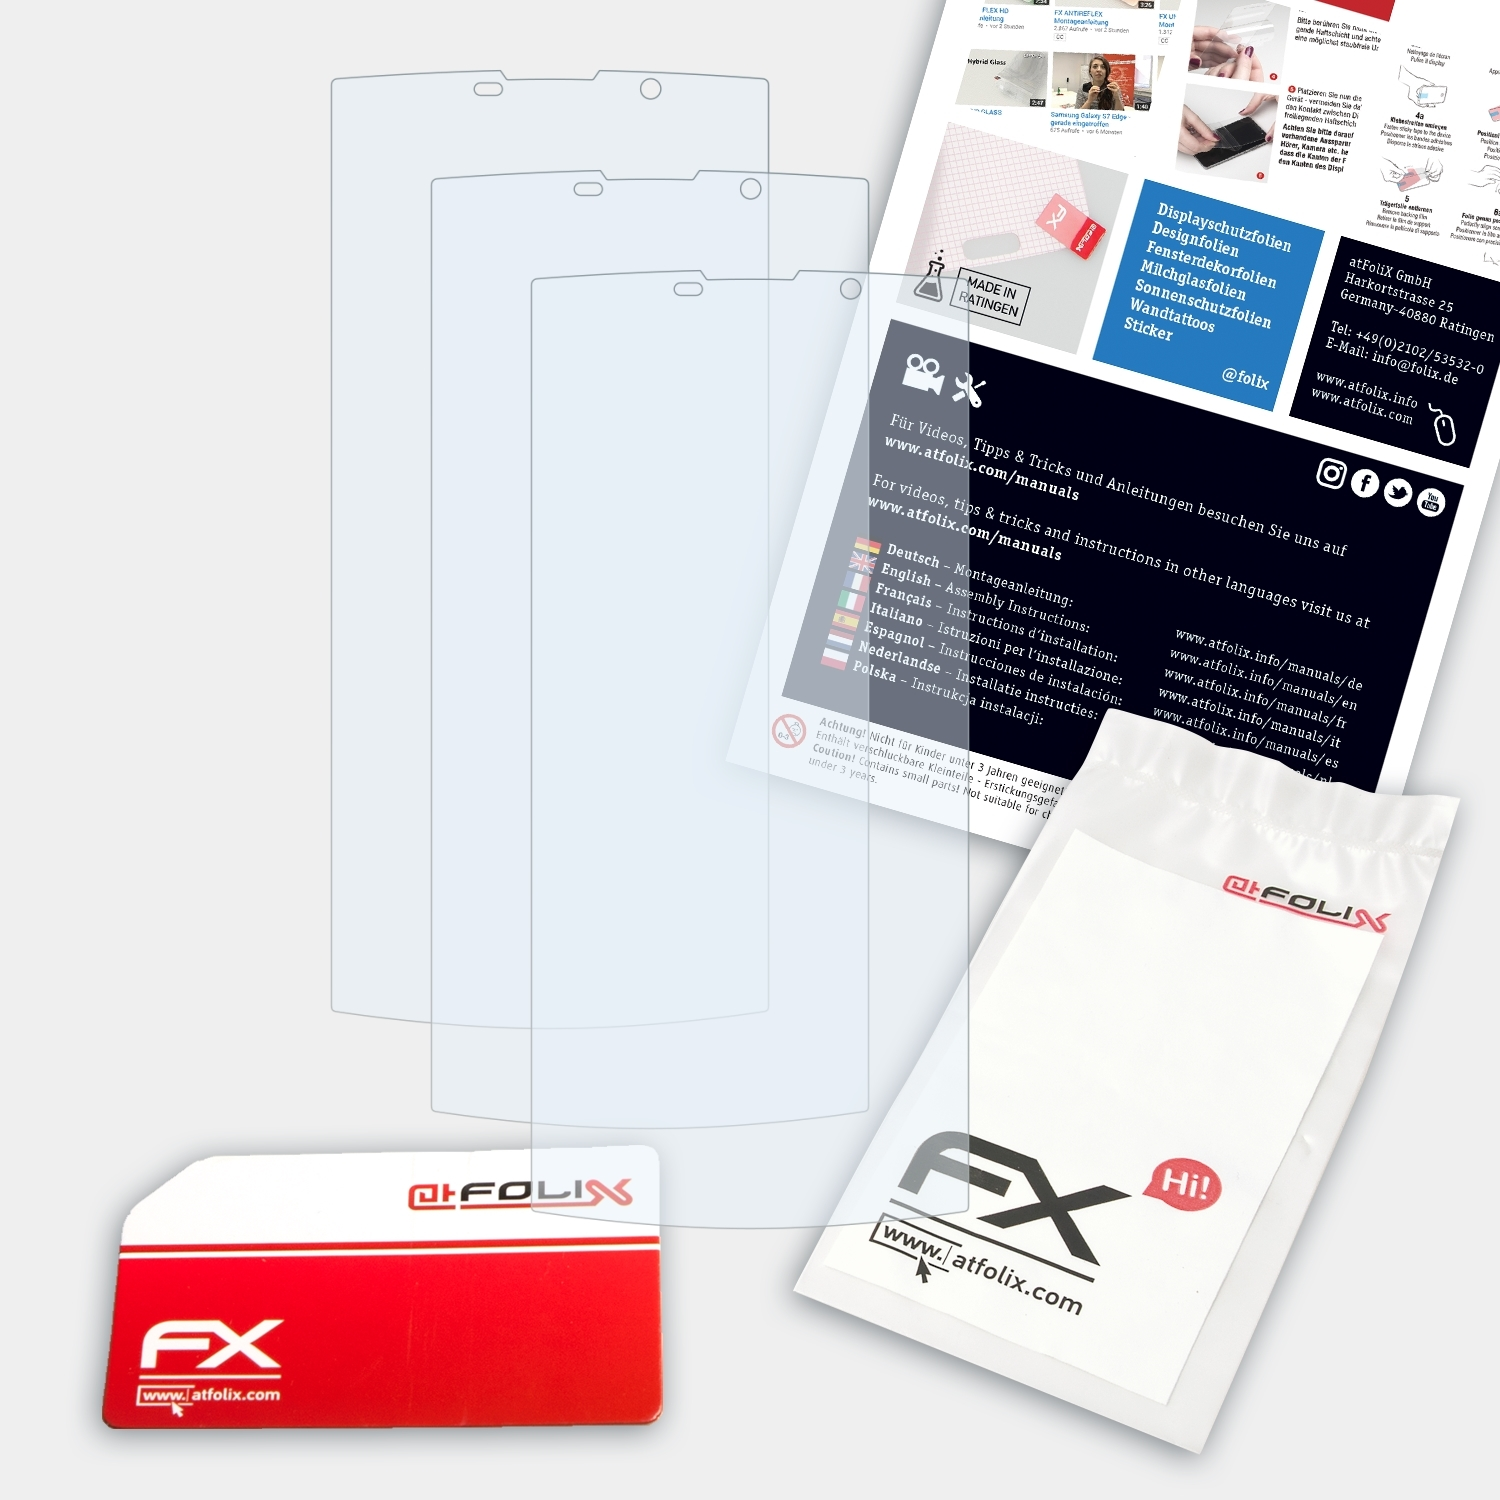 Pro) FX-Clear 3x K7 ATFOLIX Oukitel Displayschutz(für